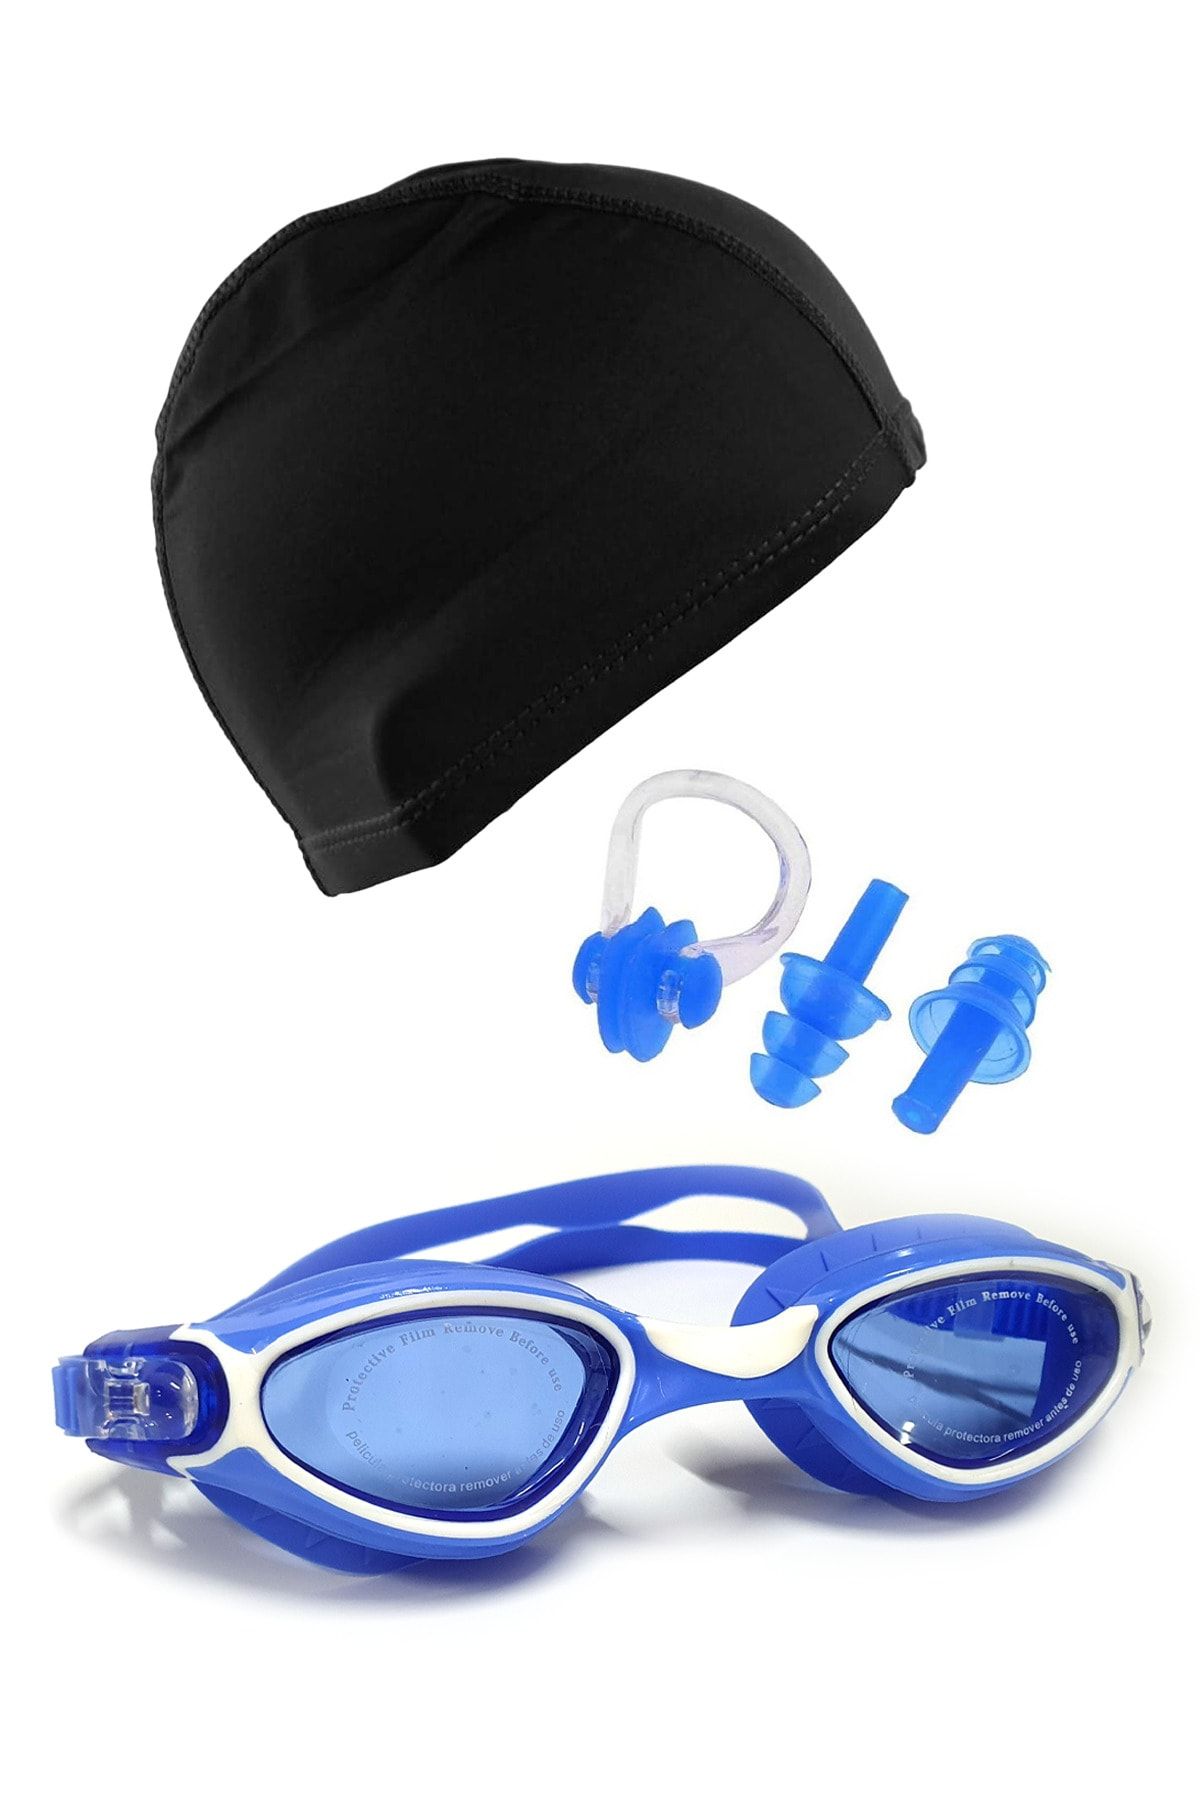 Tosima Pro Silikon Yüzücü Gözlüğü Ve Likra Bone Kulak Tıkacı Ve Burun Klips Seti Havuz Seti Full Set